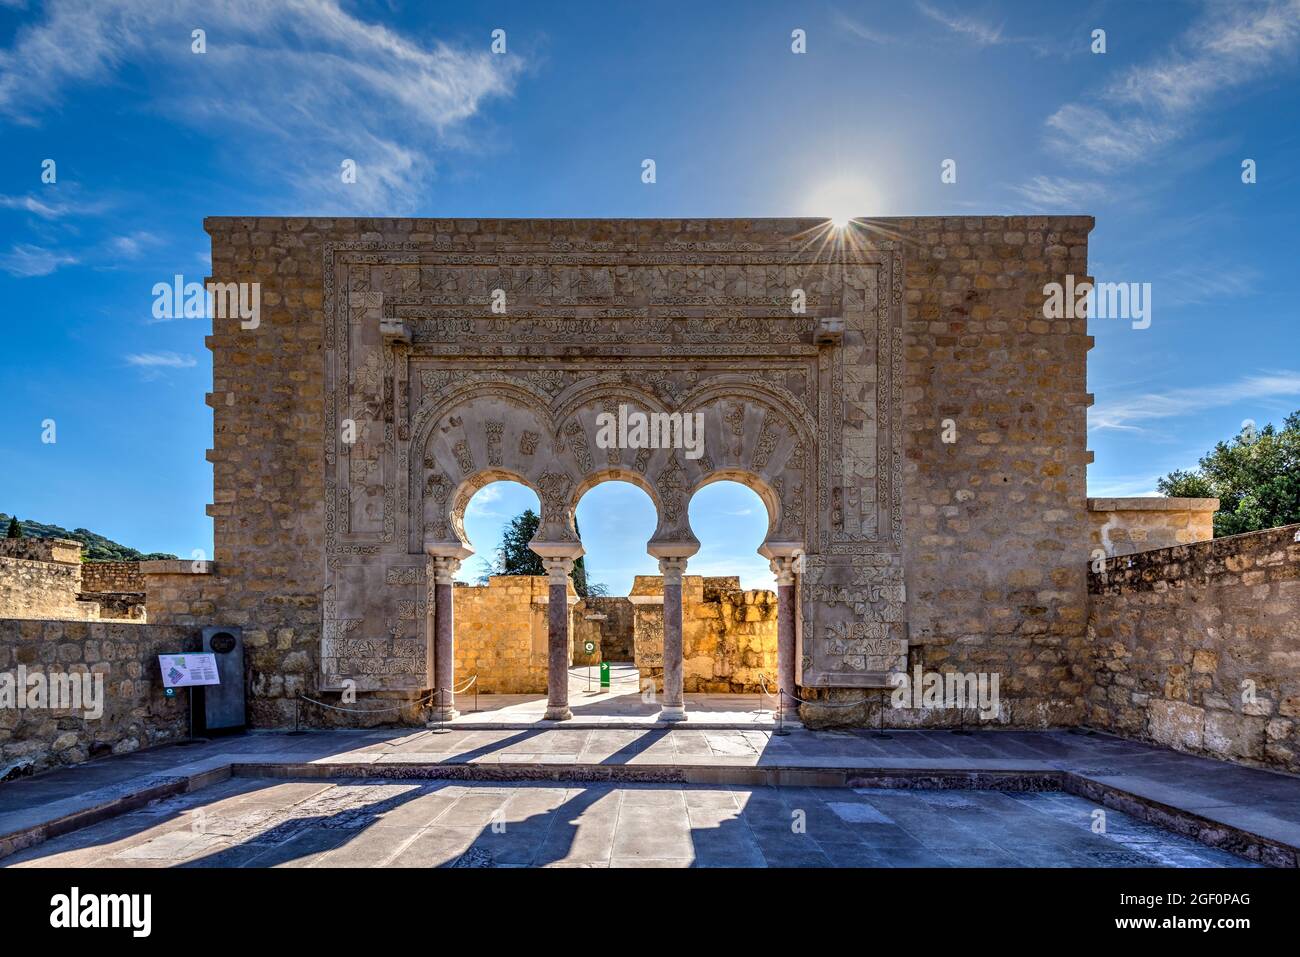 Le rovine storiche di Medina Azahara o Madinat al-Zahra palazzo-città moresco fortificato vicino Cordoba, Andalusia, Spagna Foto Stock